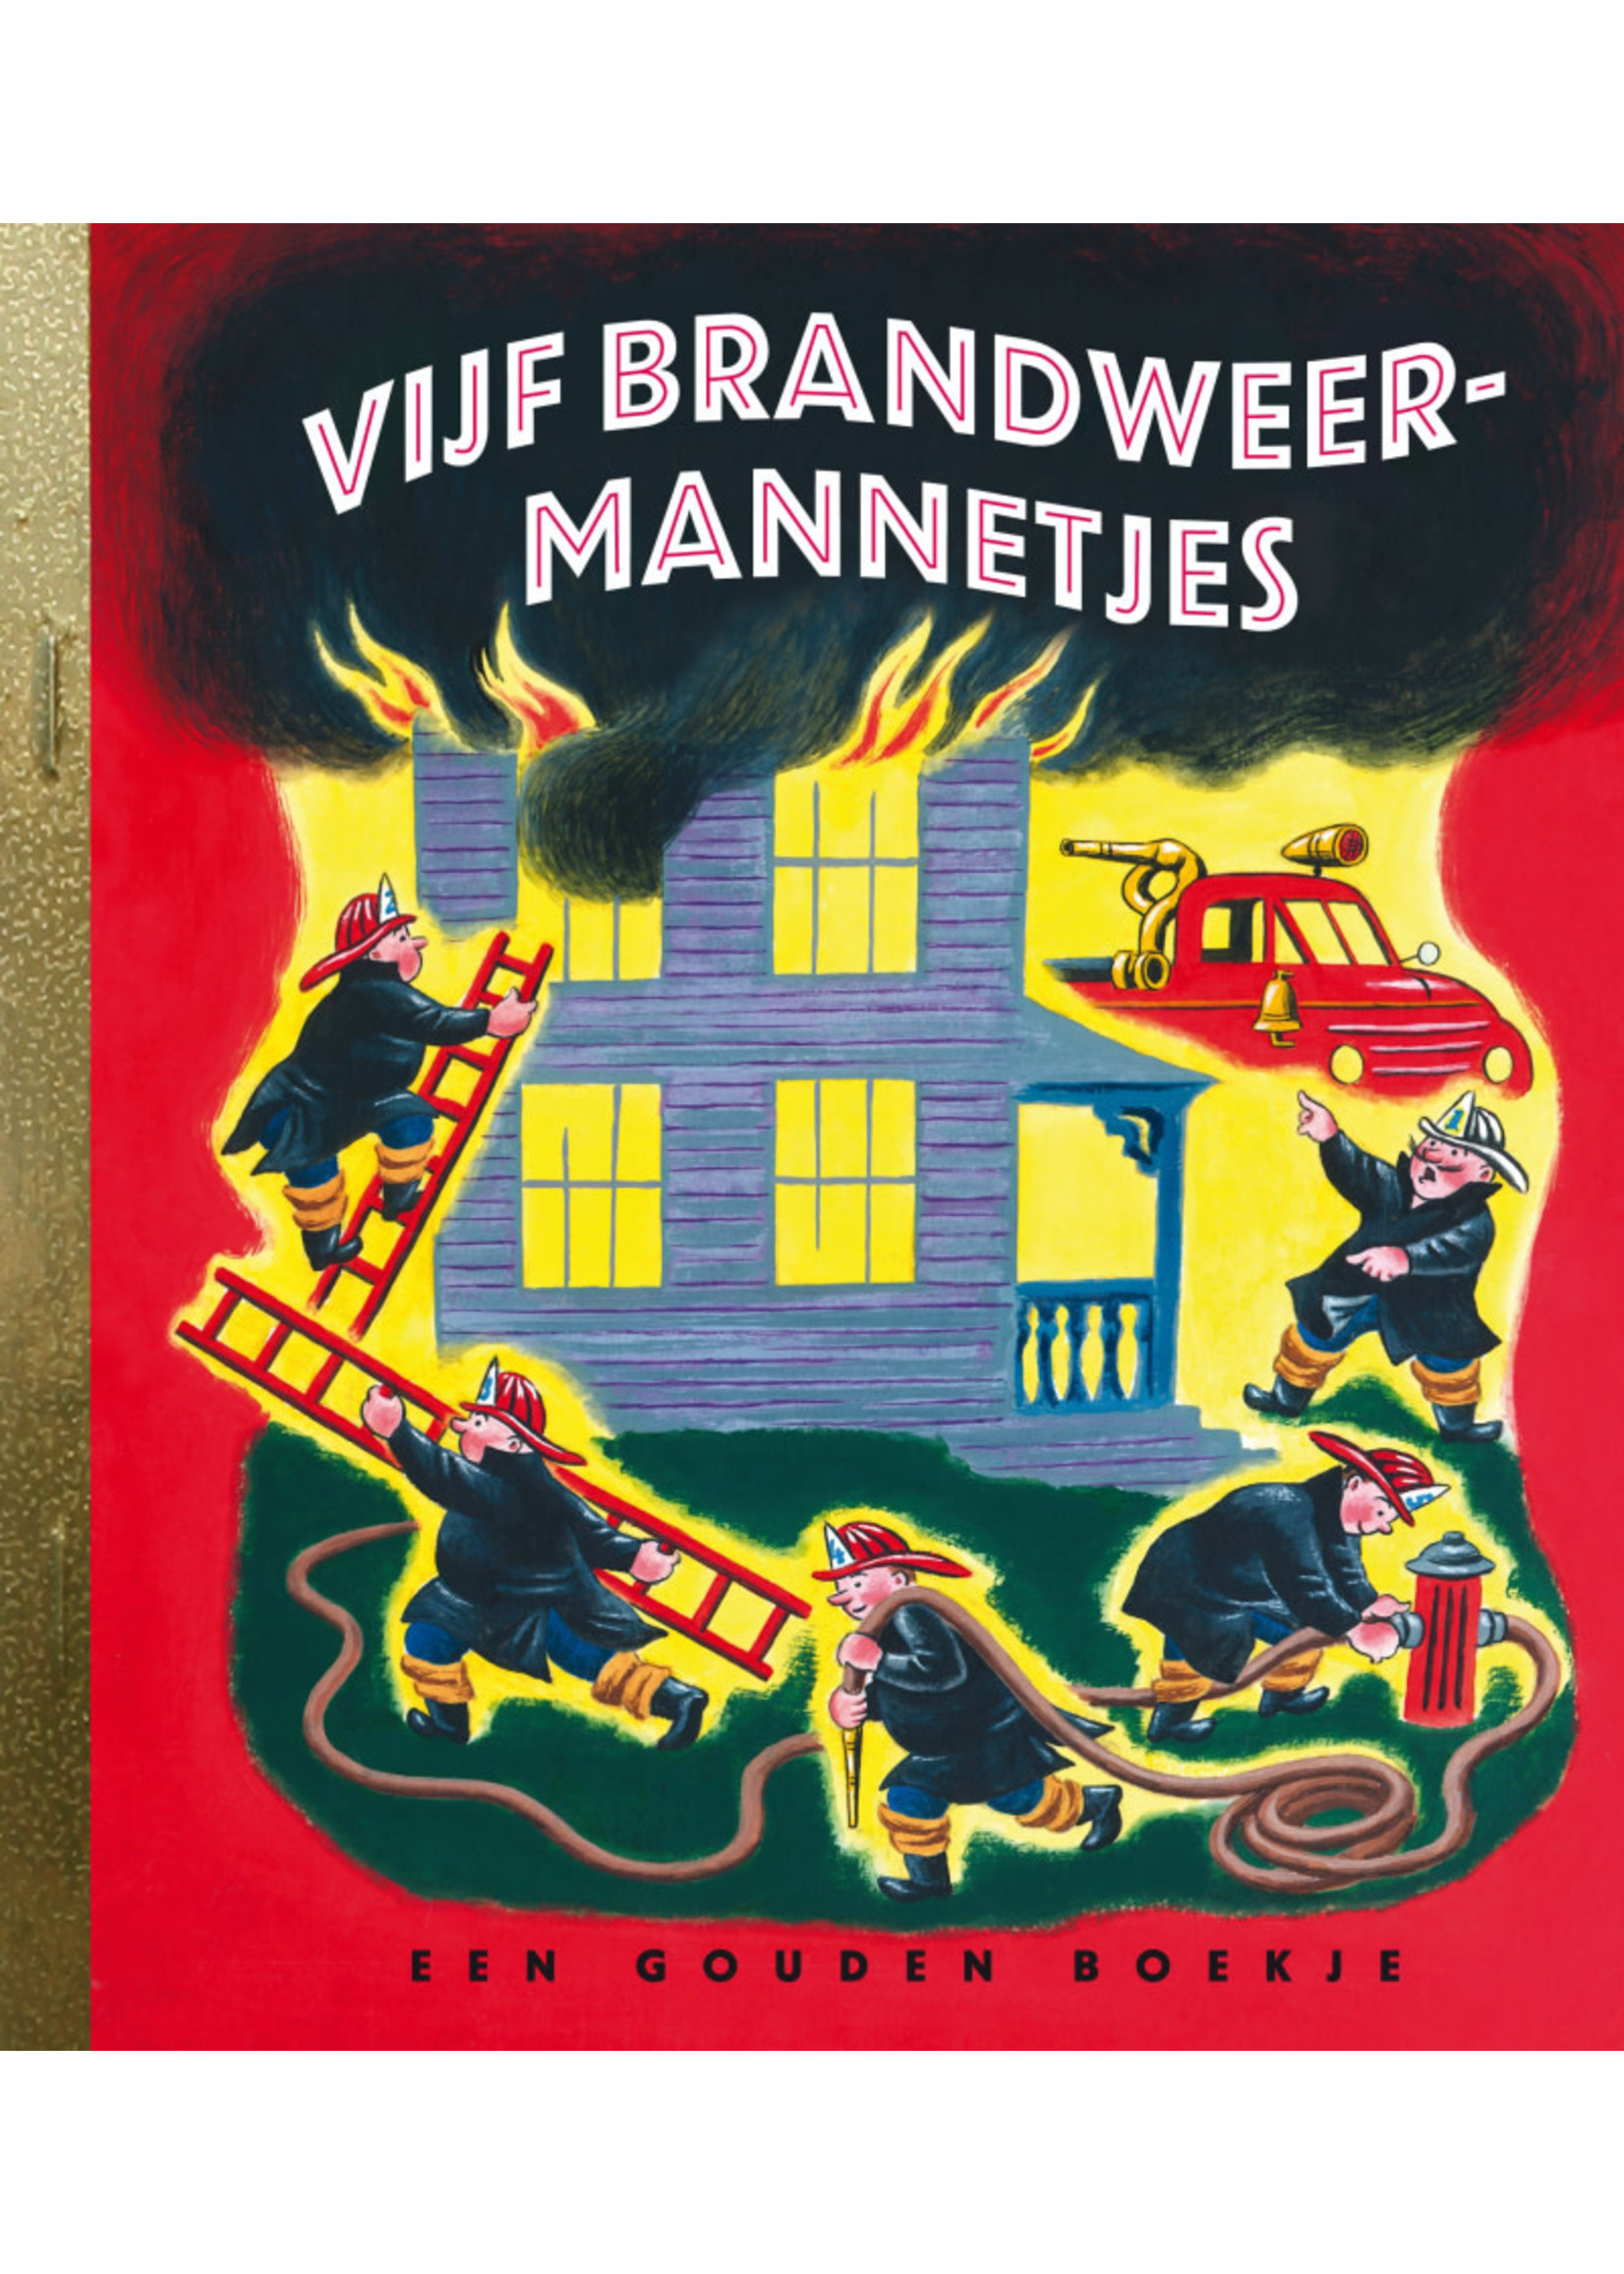 Een gouden boekje - Vijf brandweermannetjes